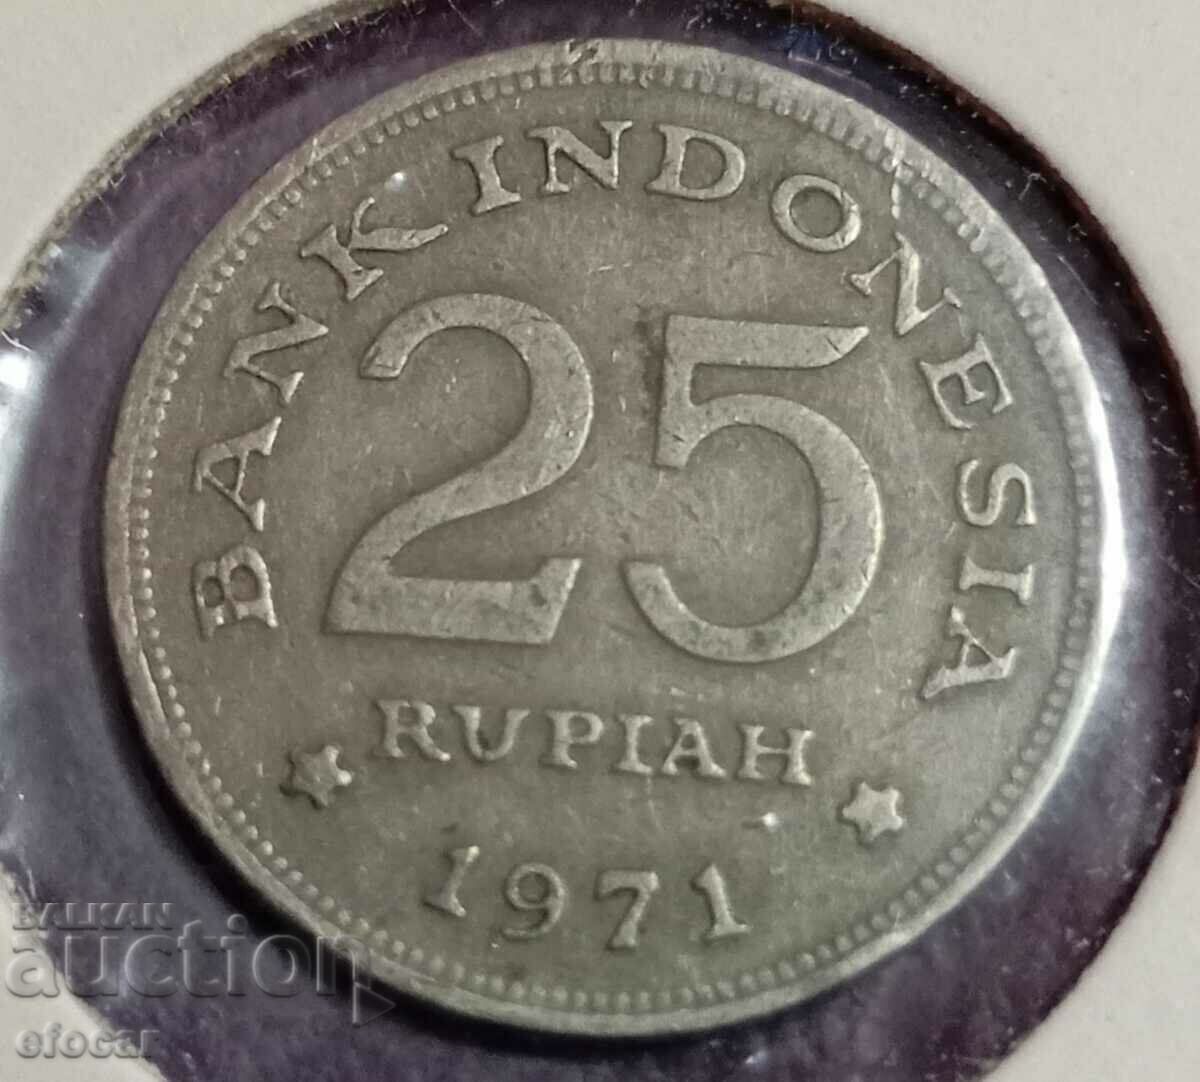 25 ρουπίες Ινδονησίας 1971